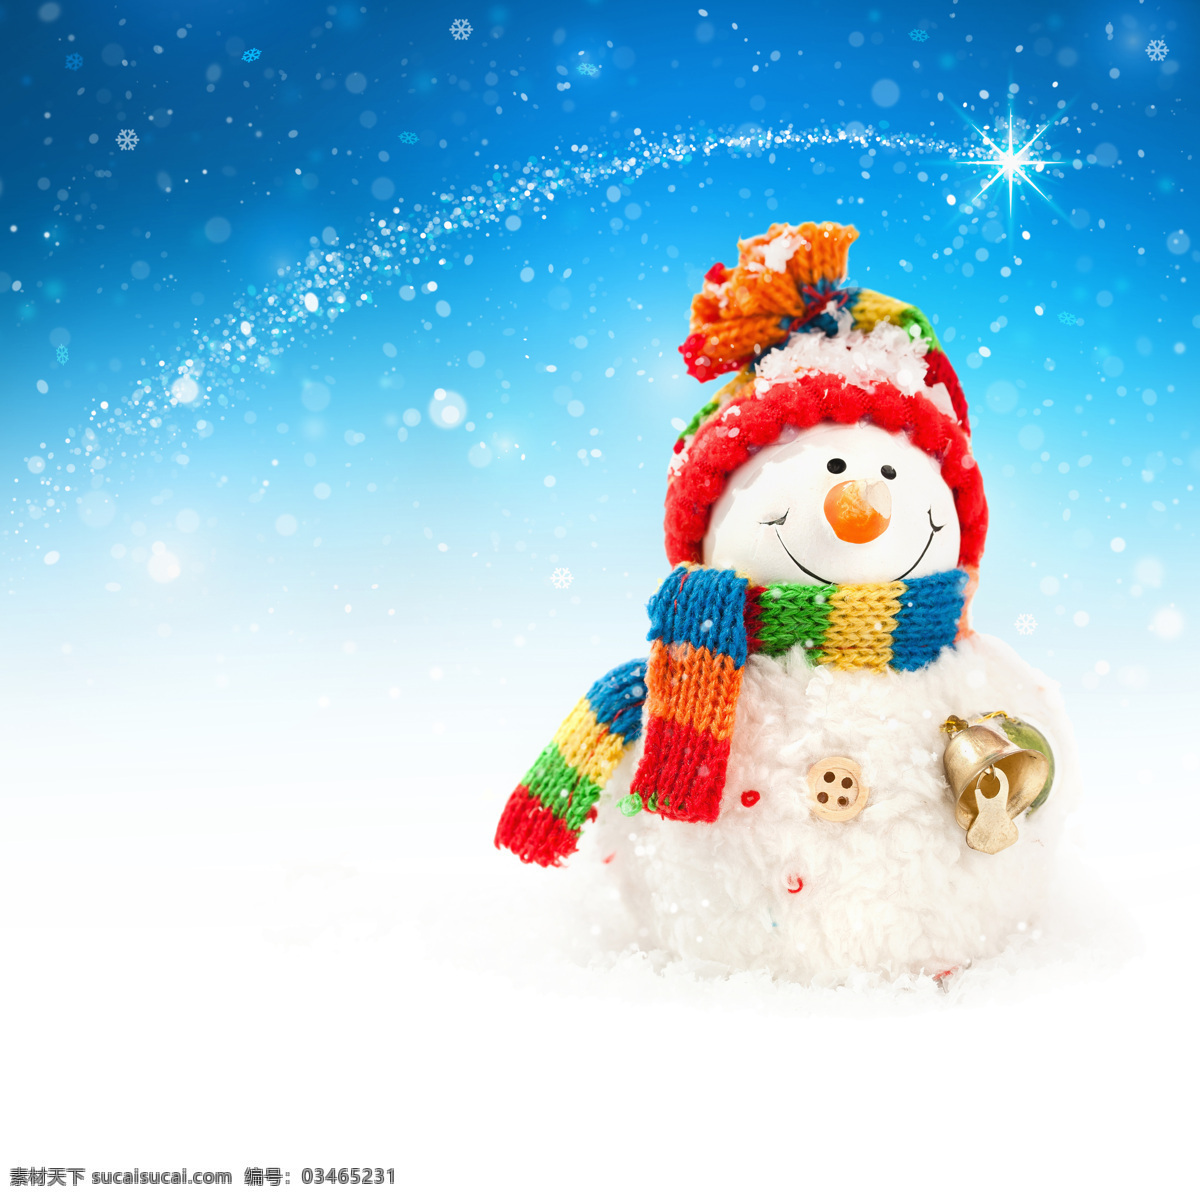 唯美圣诞雪人 唯美 清新 圣诞节 圣诞 浪漫 雪人 雪 冬天 冬季 文化艺术 节日庆祝